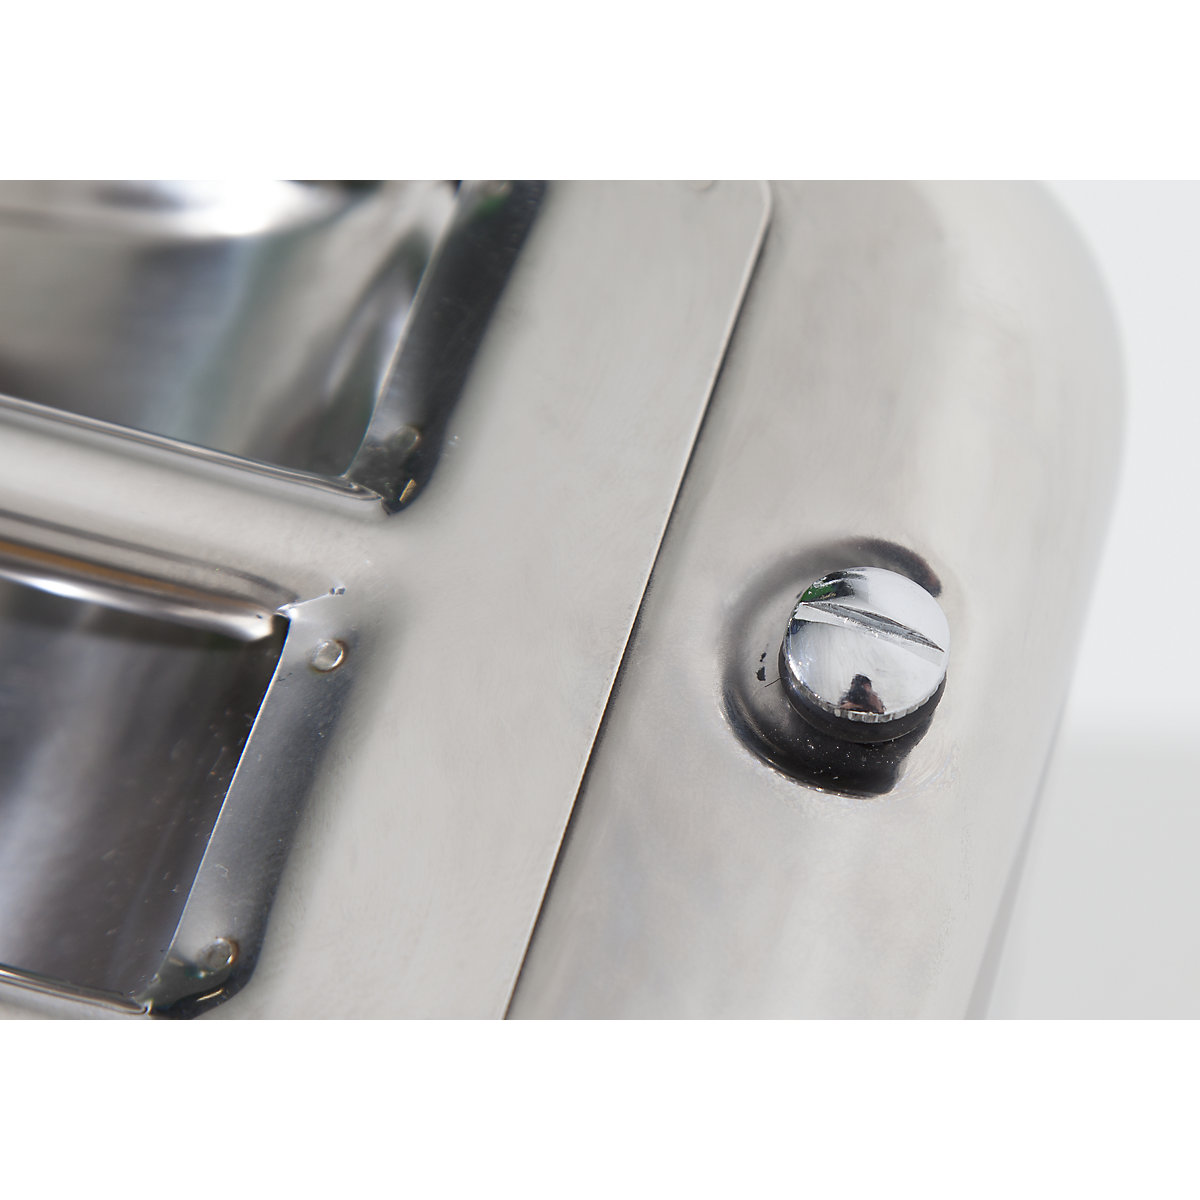 FALCON – Canistră de siguranță cu robinet pentru dozare fină (Imagine produs 3)